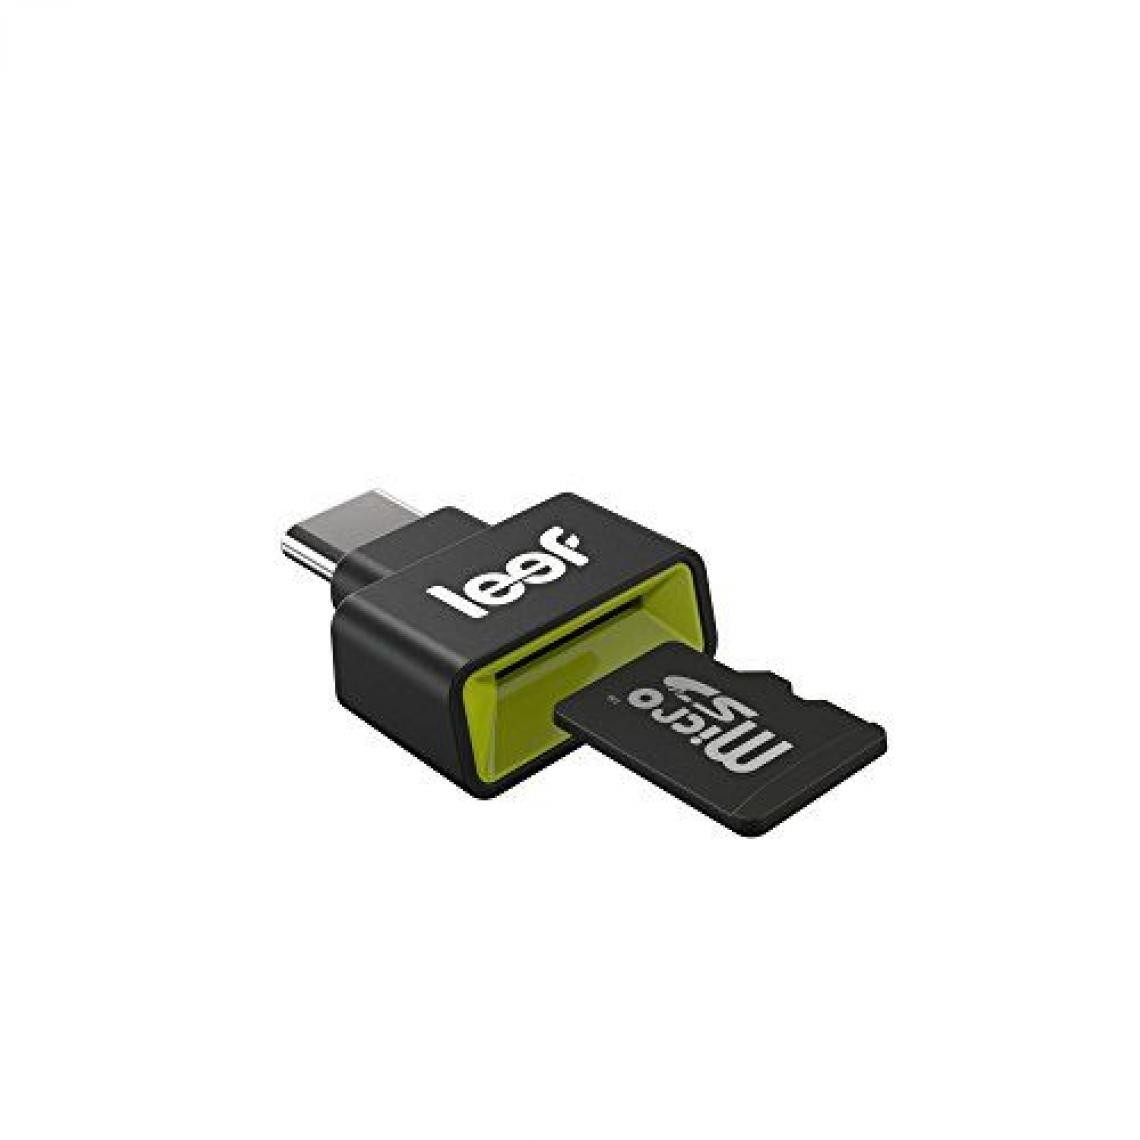 Leef - Leef Access-C Lecteur mobile microSD sur USB C - Lecteur carte mémoire